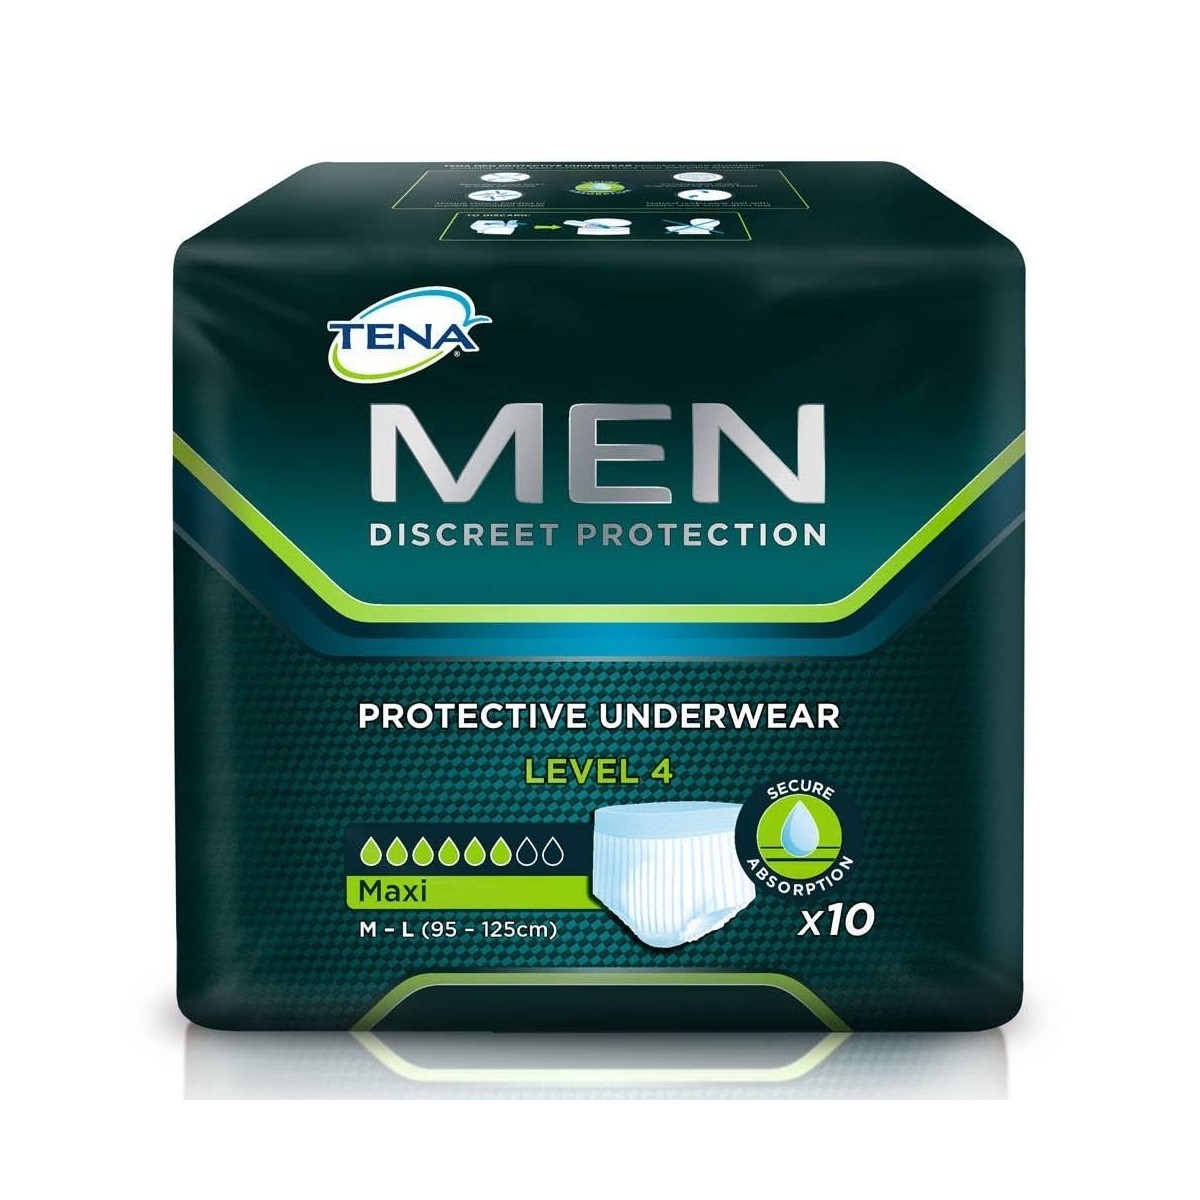 tena-men-protective-underwear-level-4-t-m-l